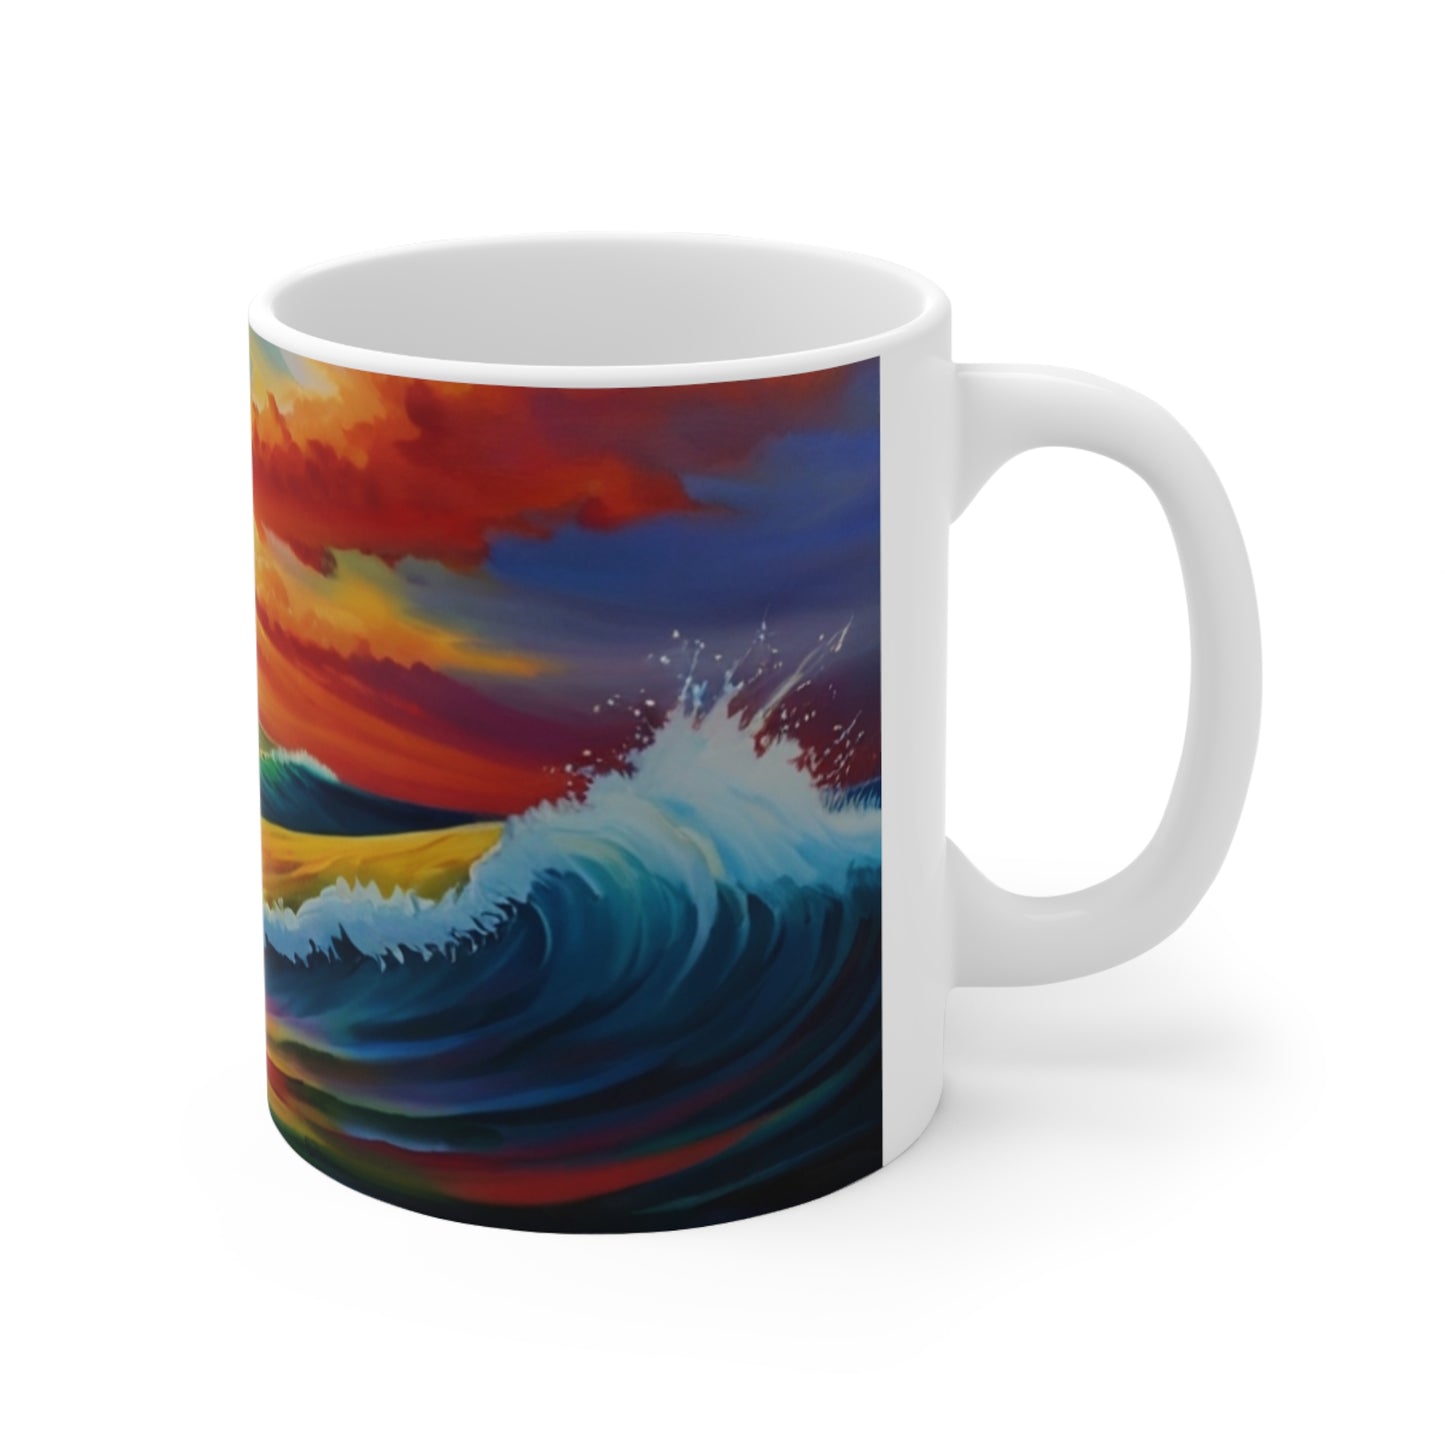 Waves Rising Among Sunrise Mug - Ceramic Coffee Mug 11oz